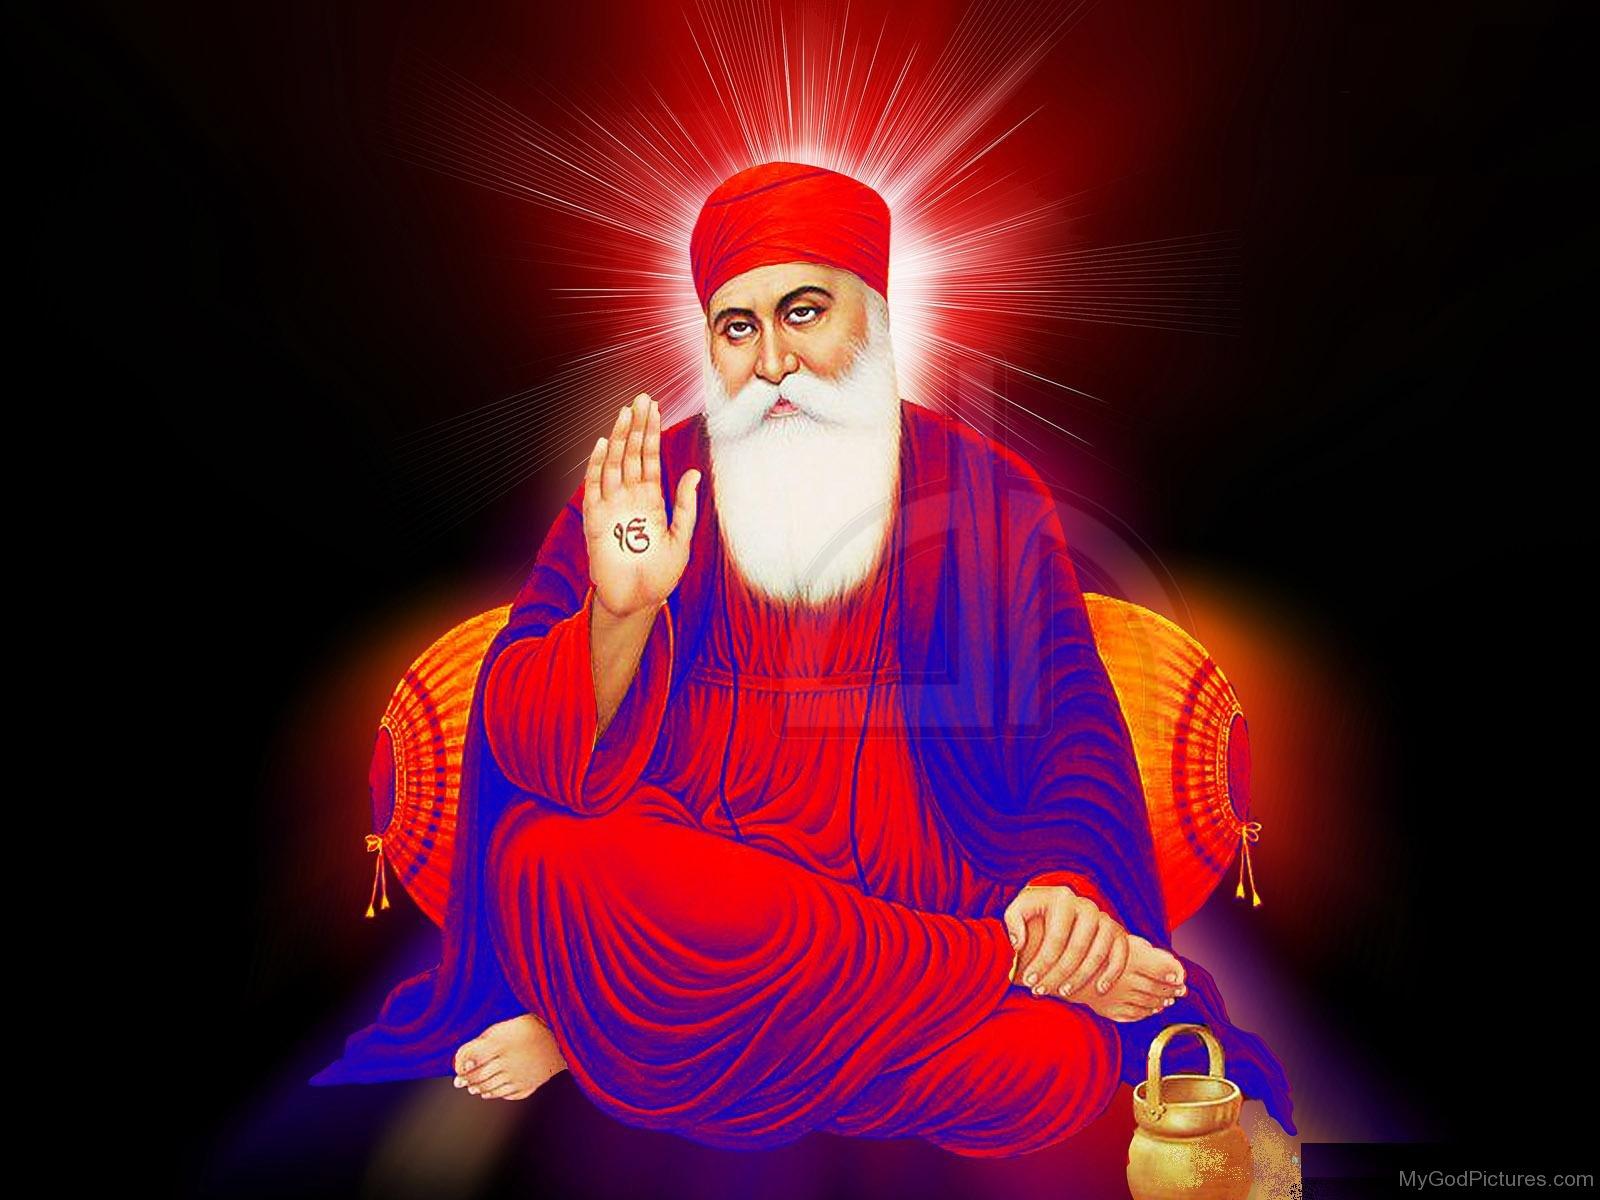 Guru Nanak Dev Ji Wallpapers For Mobile